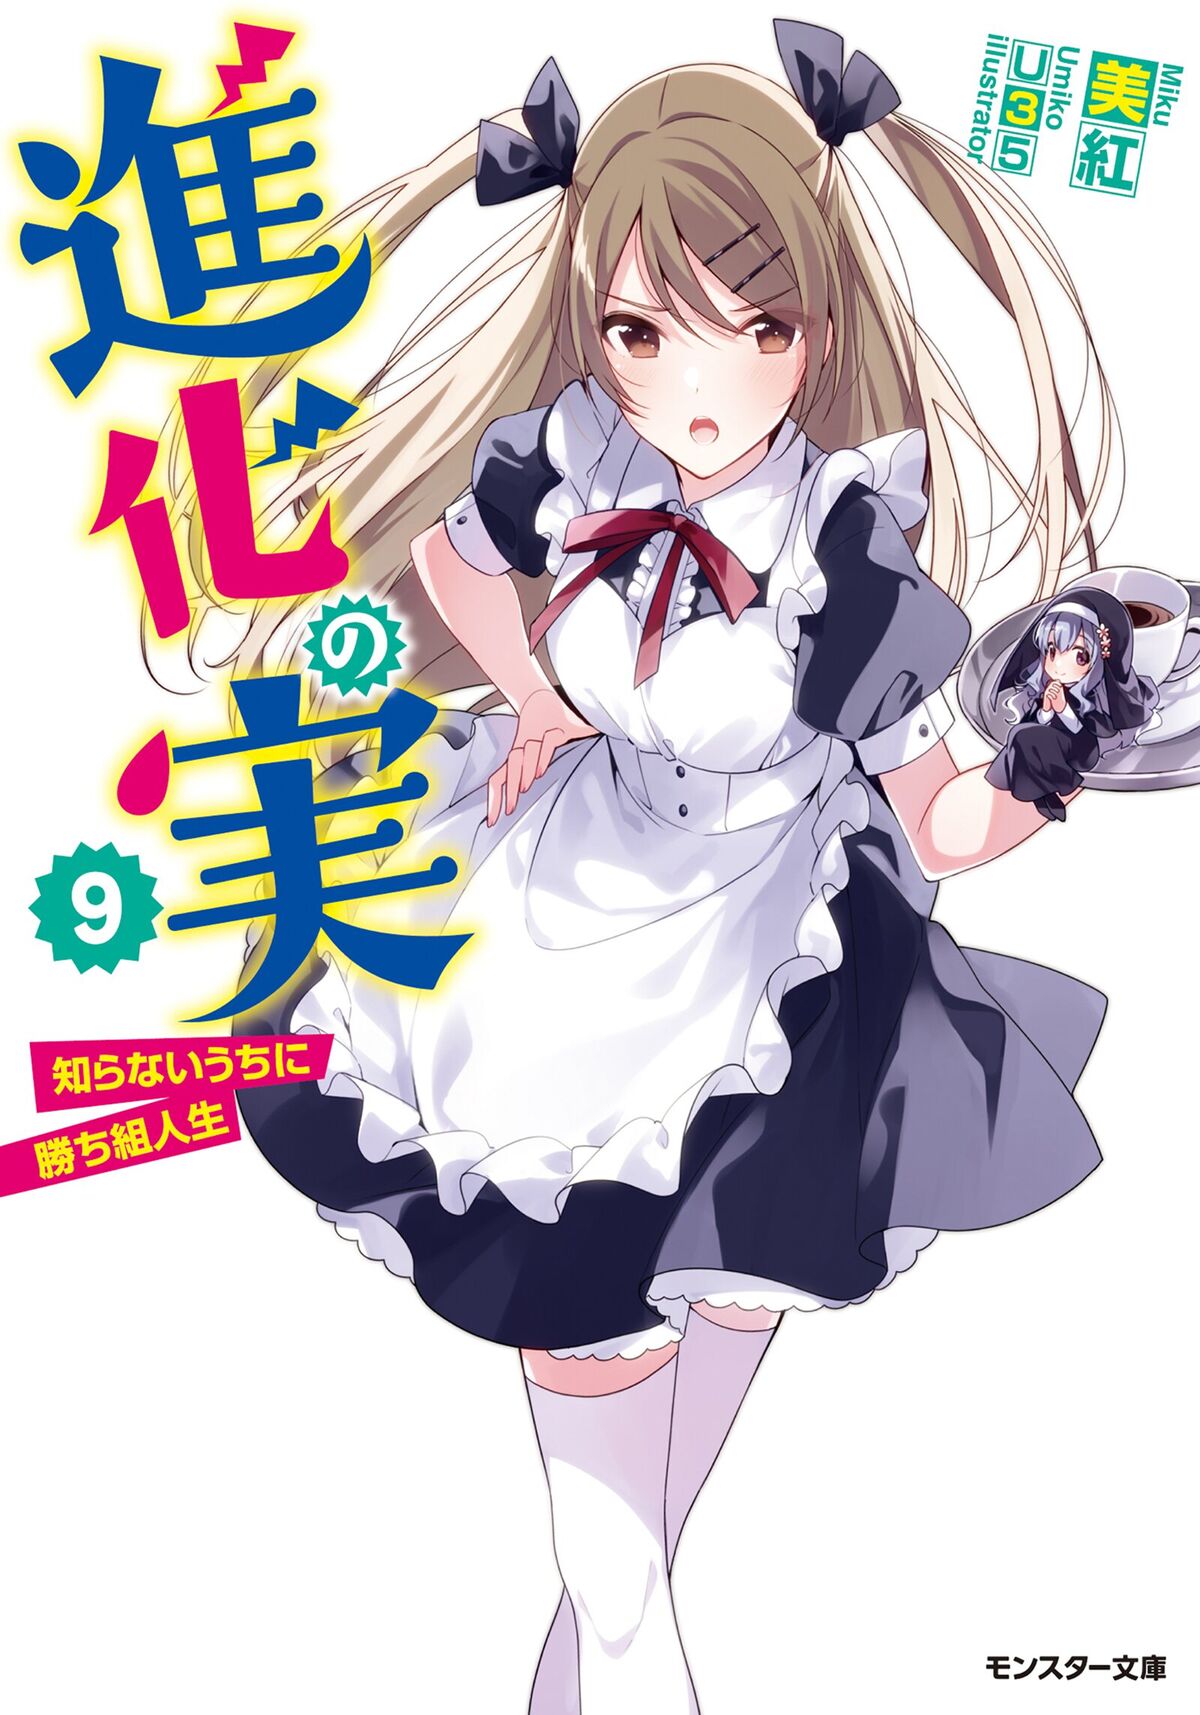 Light Novel Volume 10, Shinka no Mi Wiki